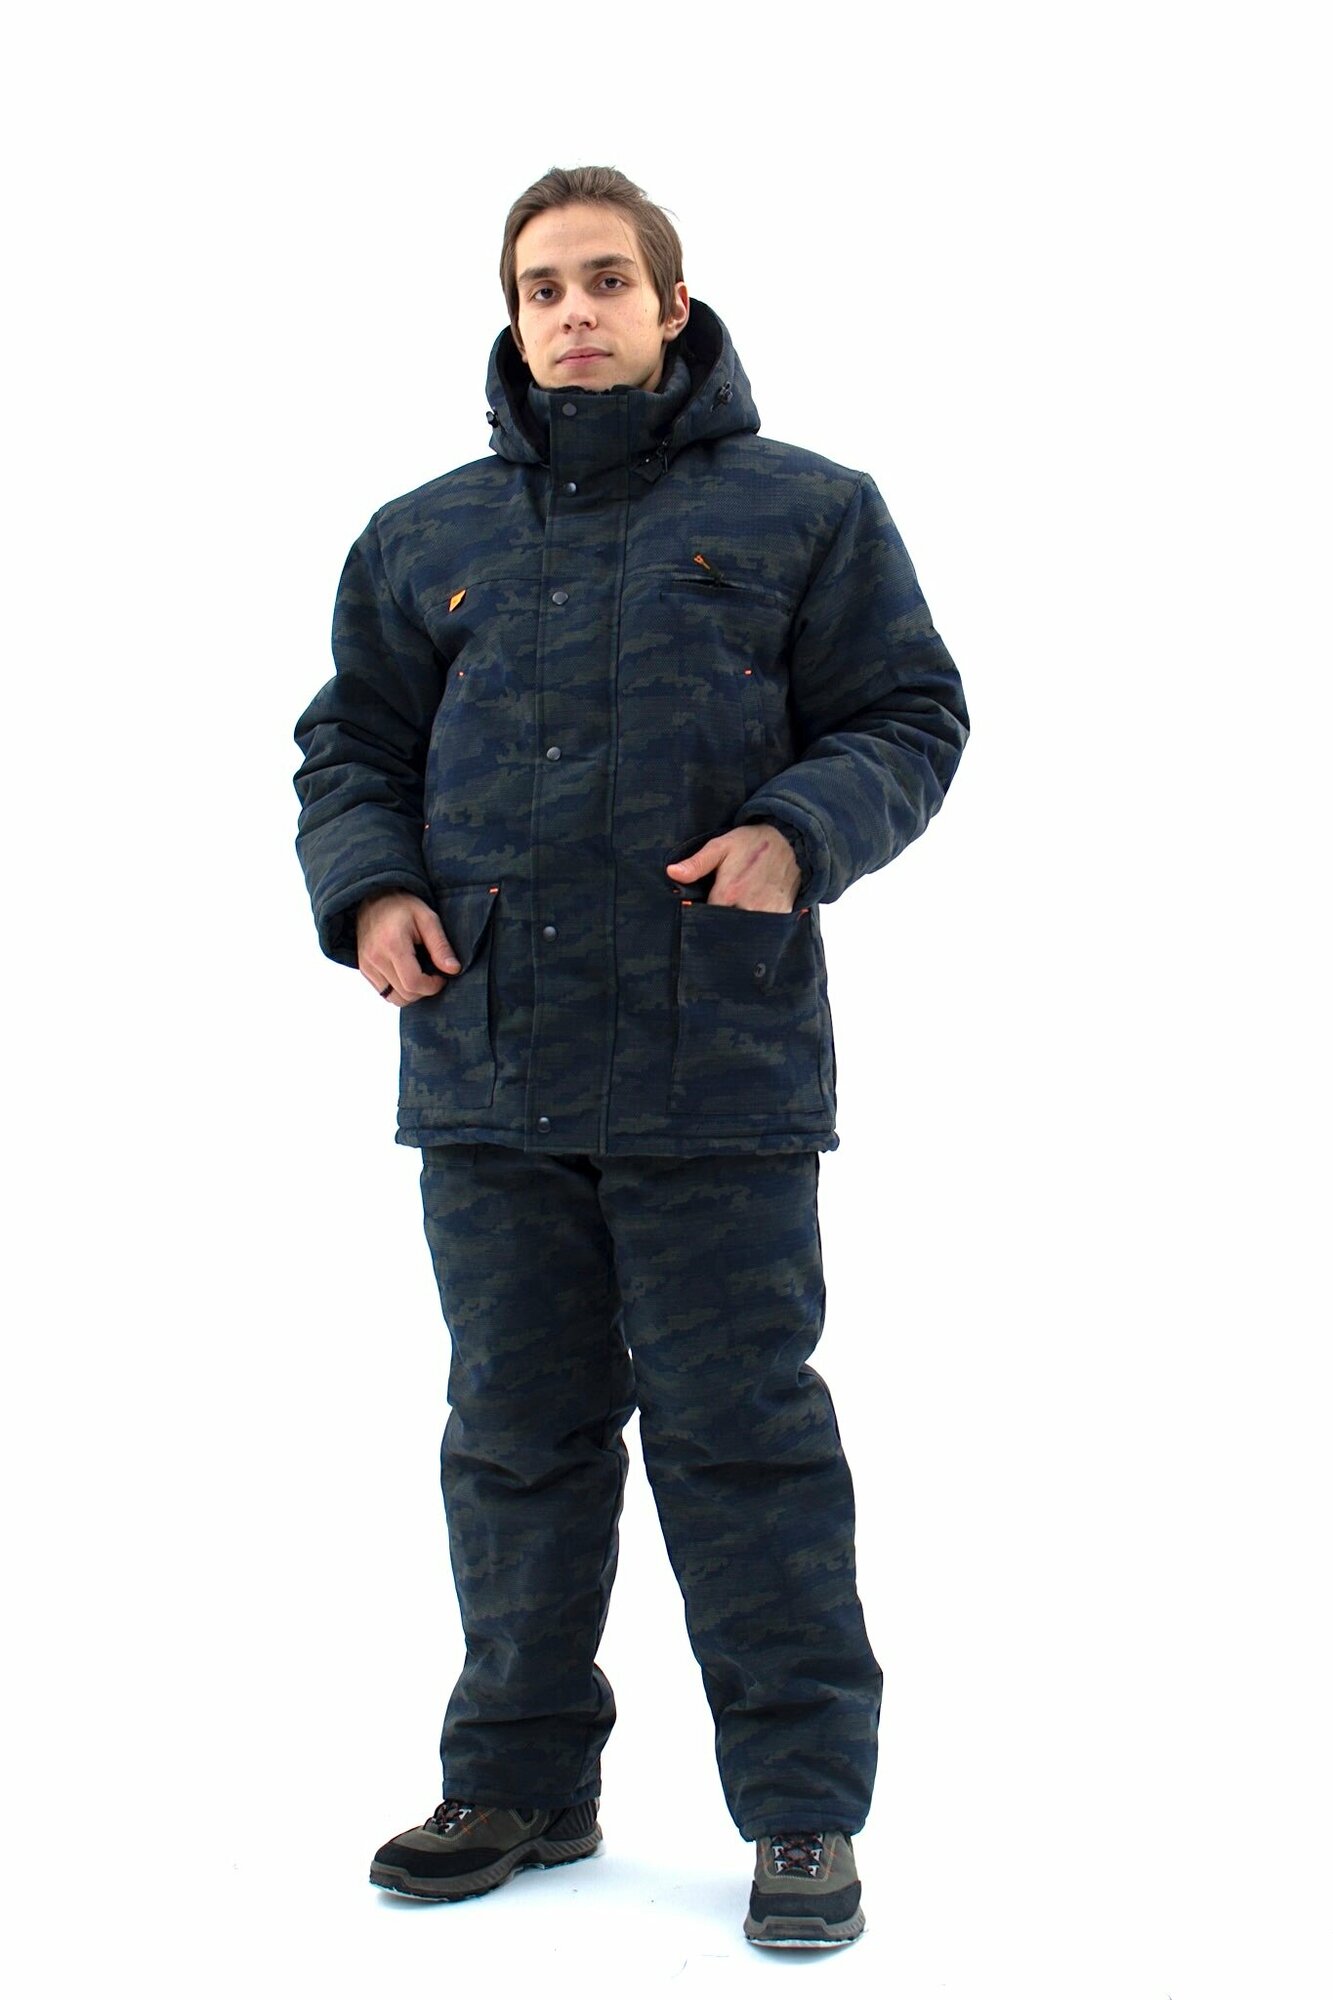 Зимний камуфляжный мужской костюм IDCOMPANY "Тайга" для охоты, рыбалки и активного отдыха